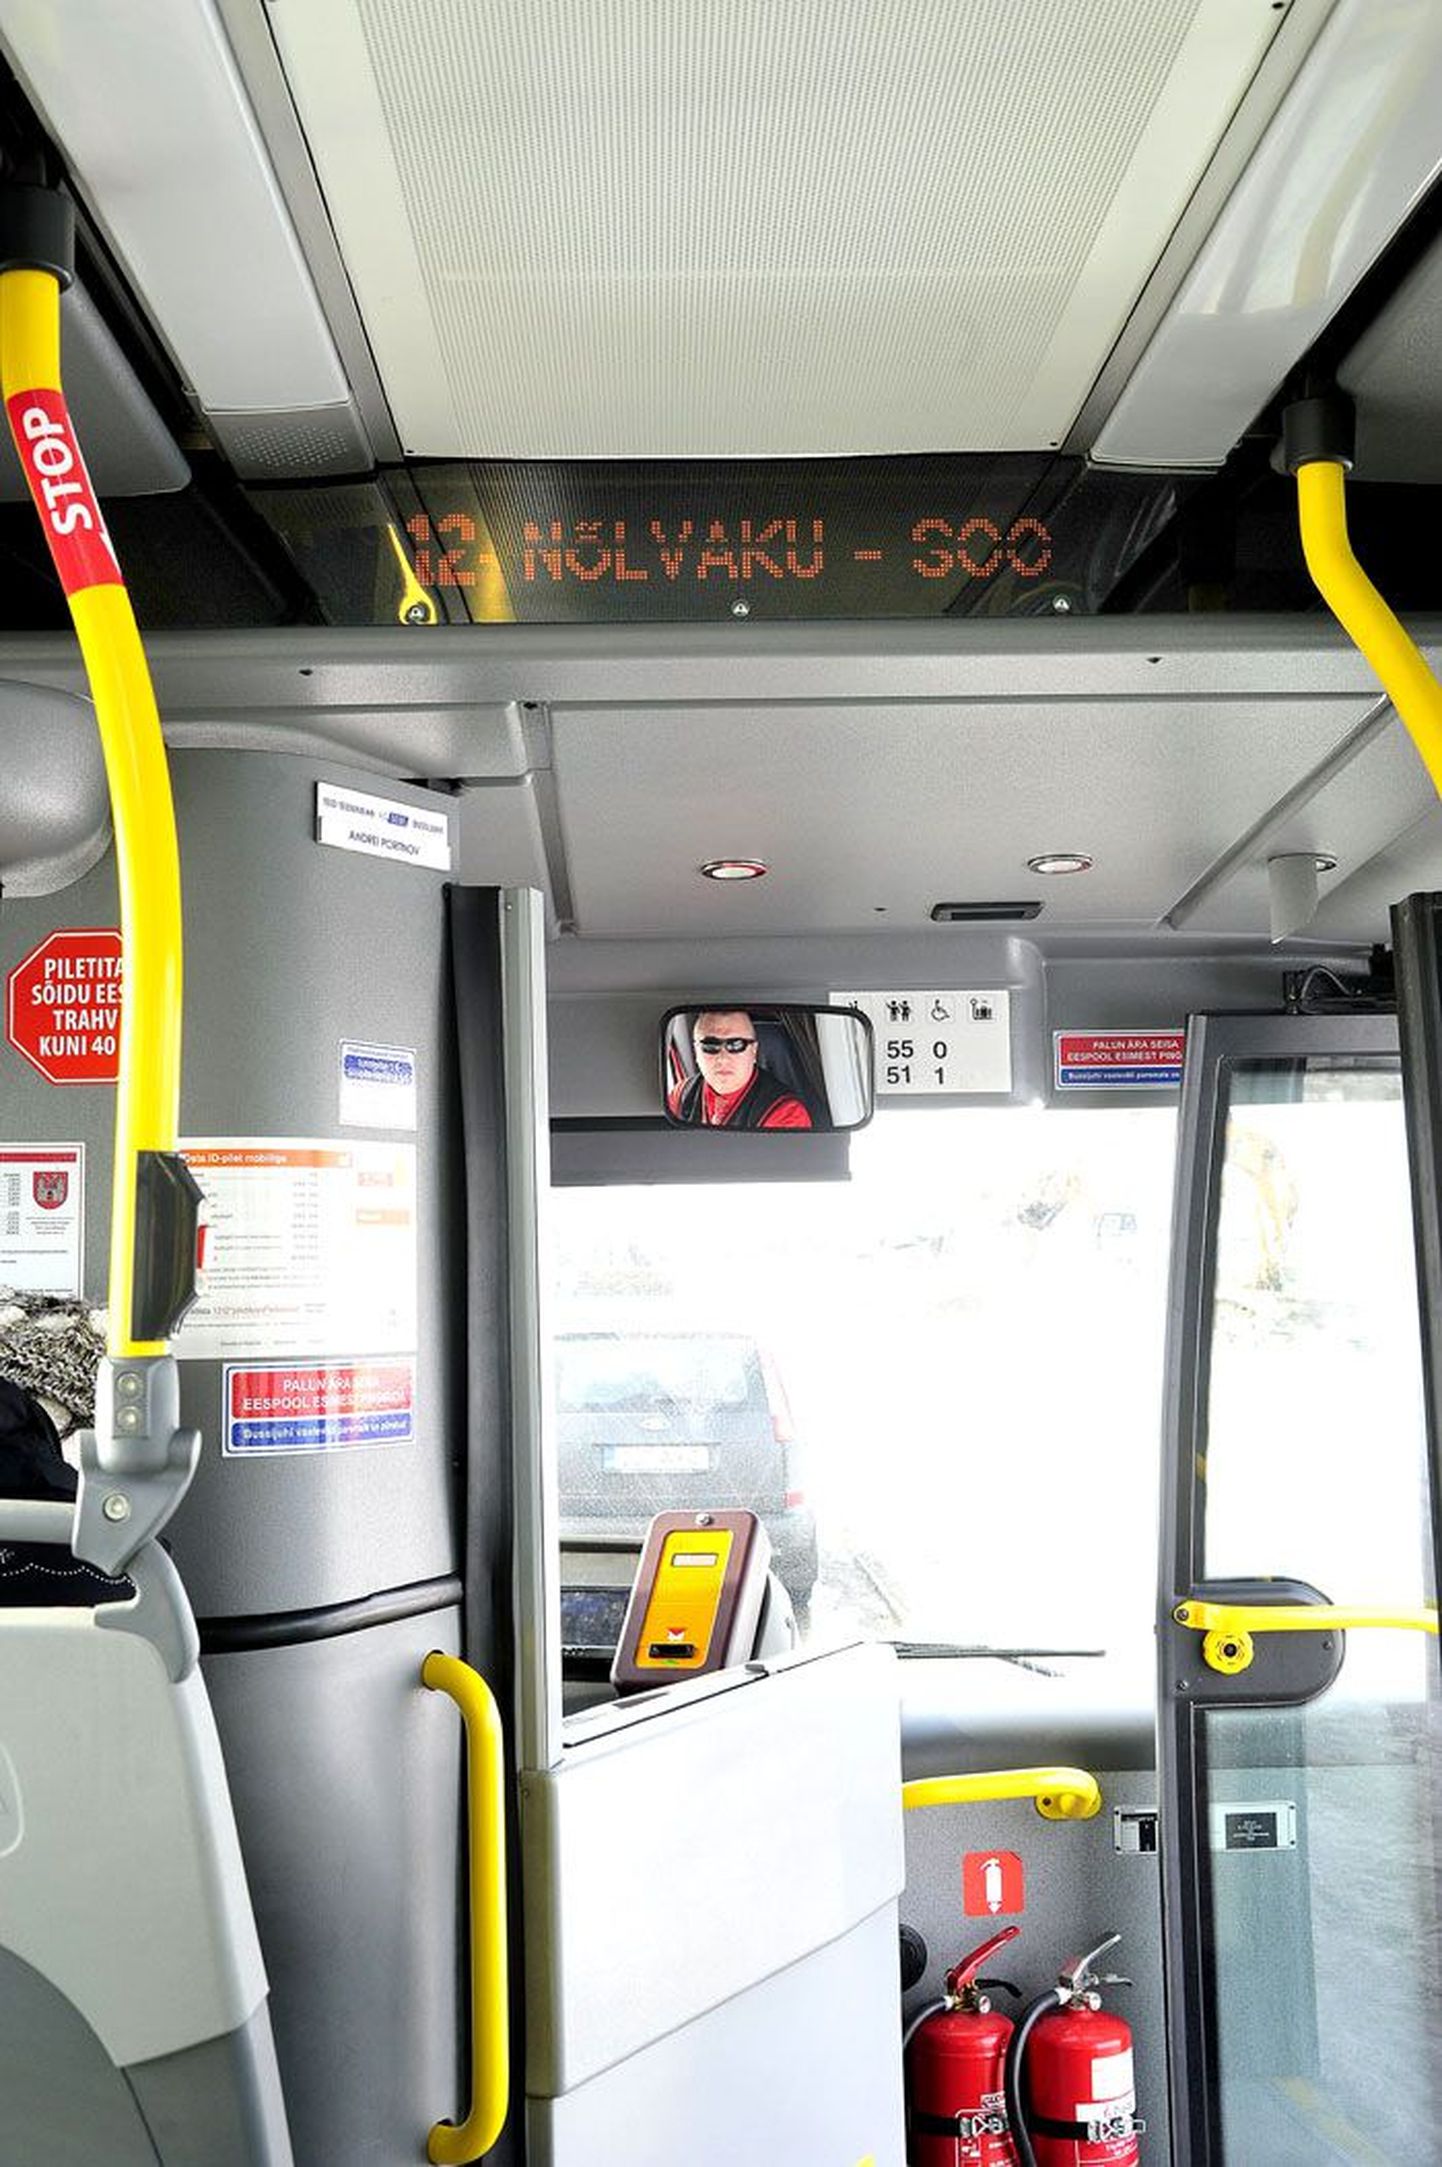 Bussi salongi laes on valgustabloo, mis näitab liini numbrit ja nime, peatusenimesid ja kellaaega ning manitseb sõitjaid kasutama stoppnuppu (vasakul) bussi peatamiseks peatuses.